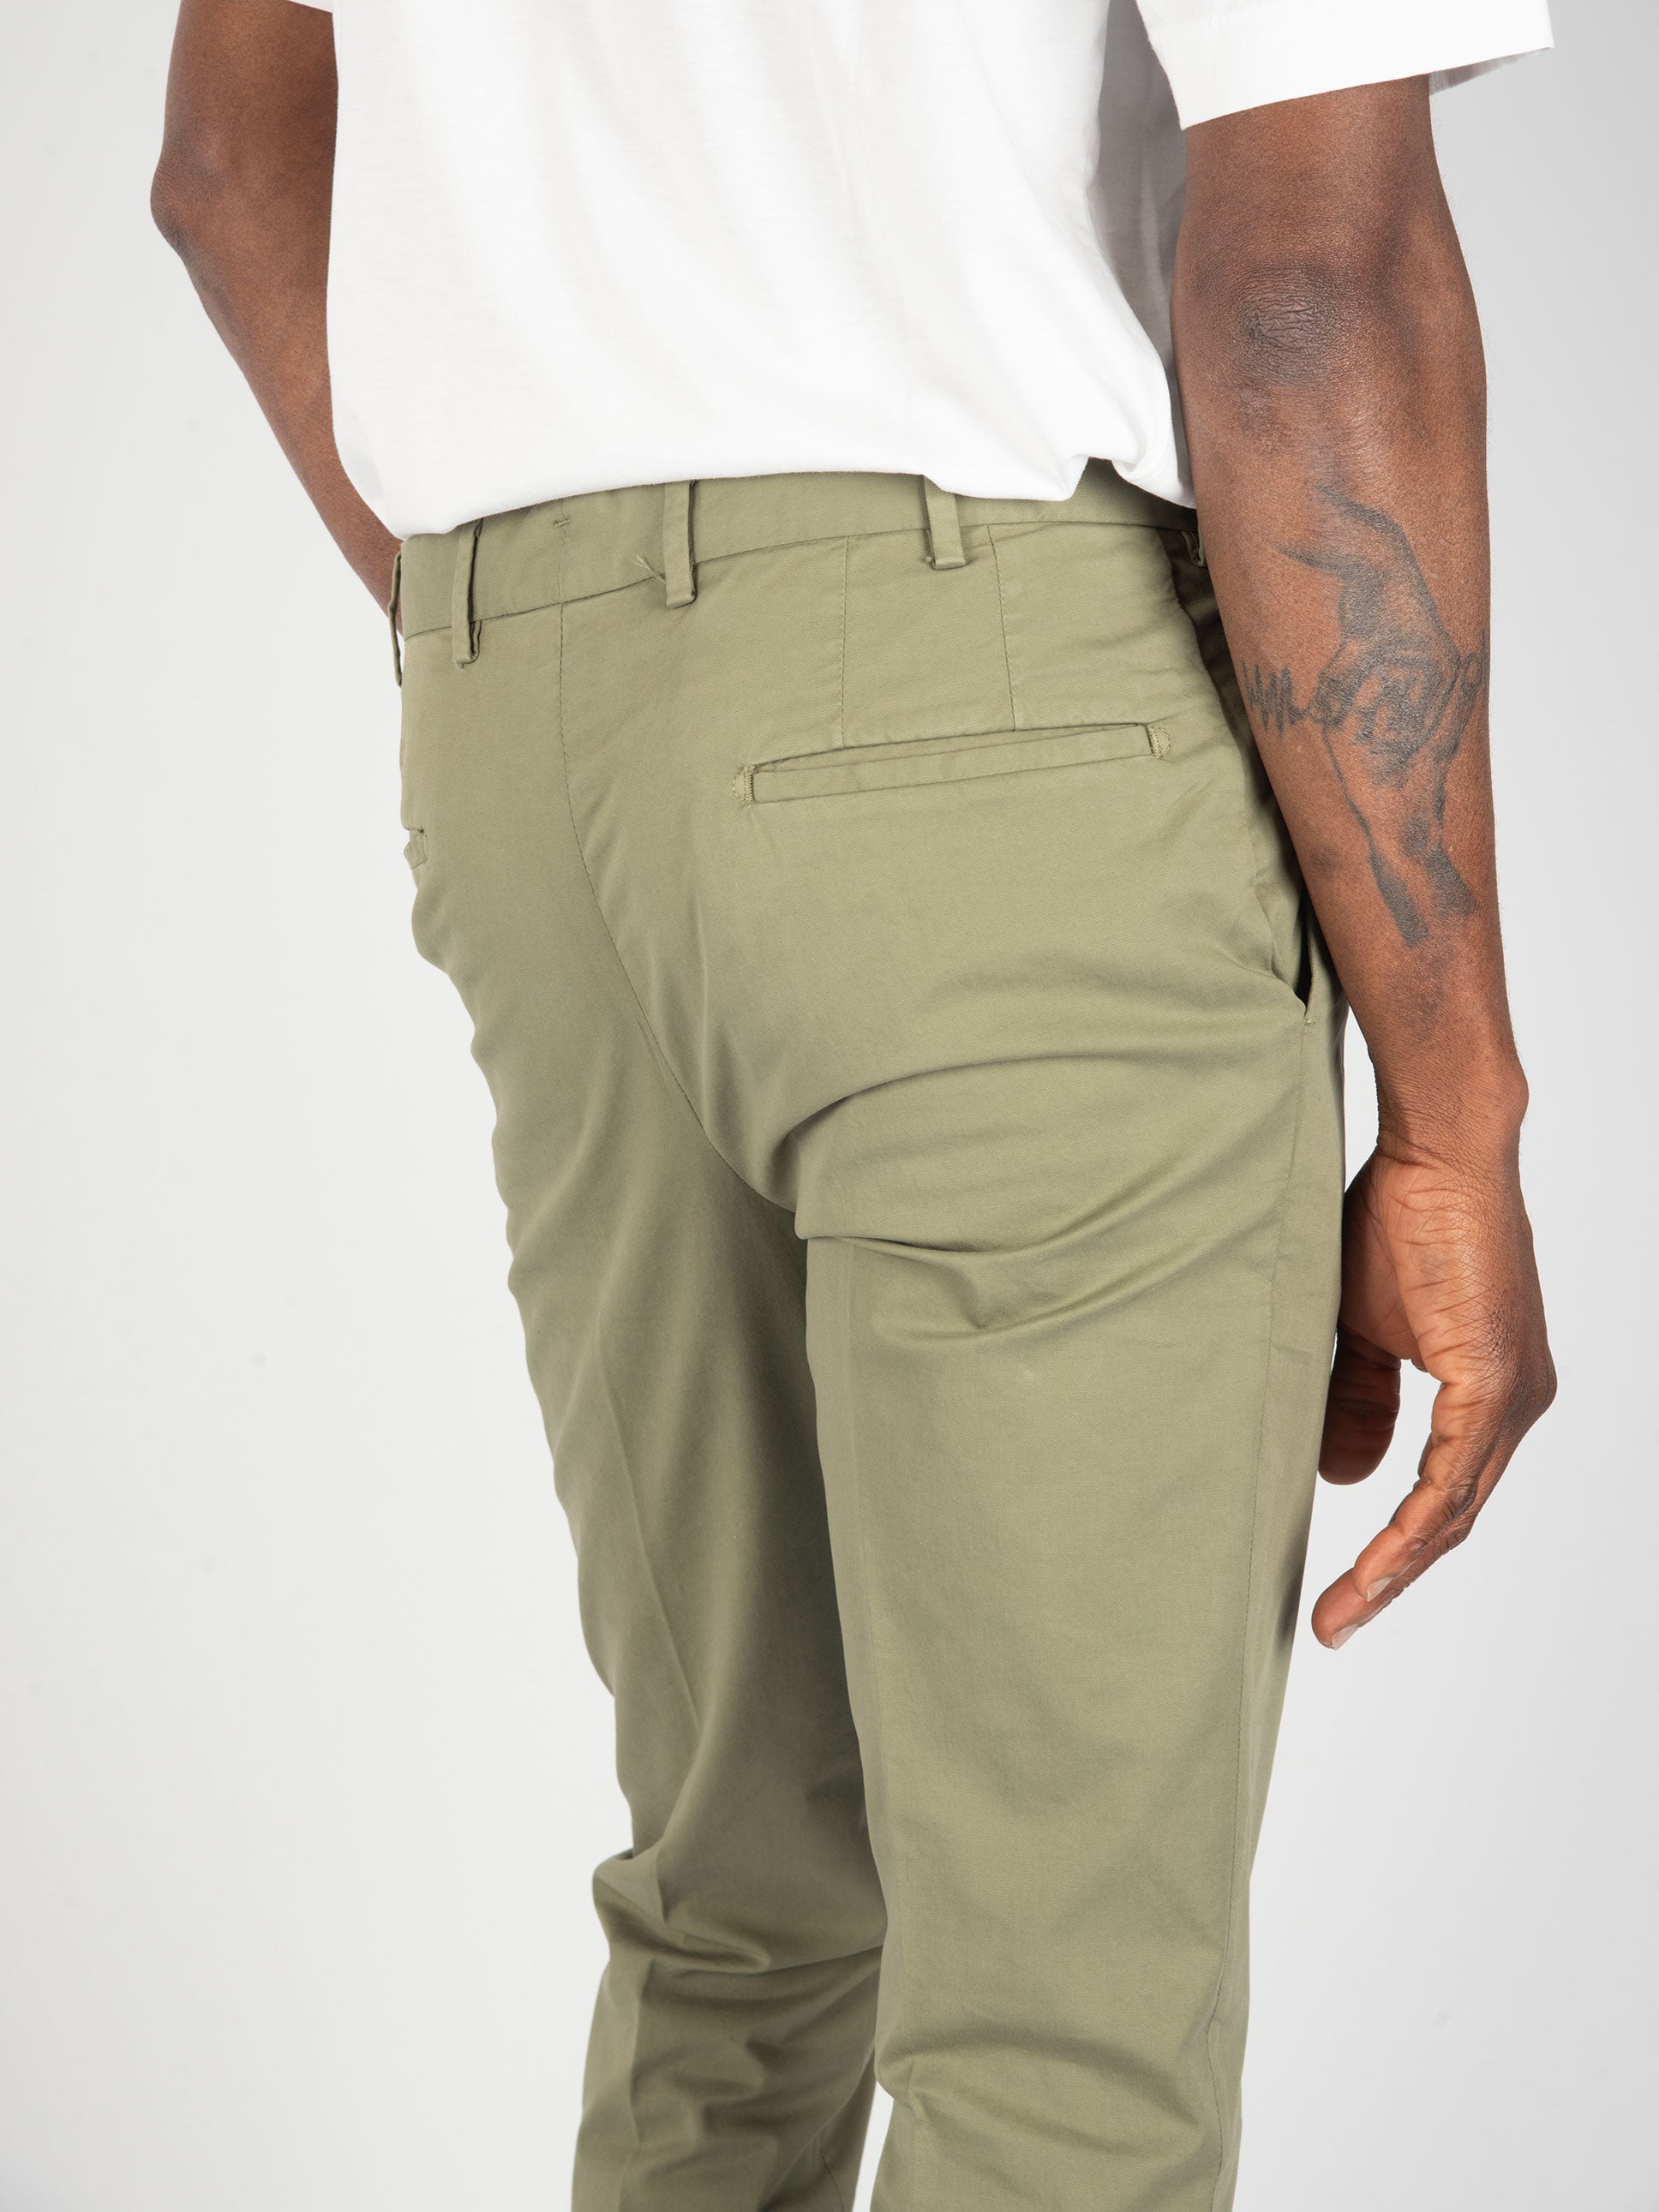 Pantalone Cotone e Seta- Verde Militare